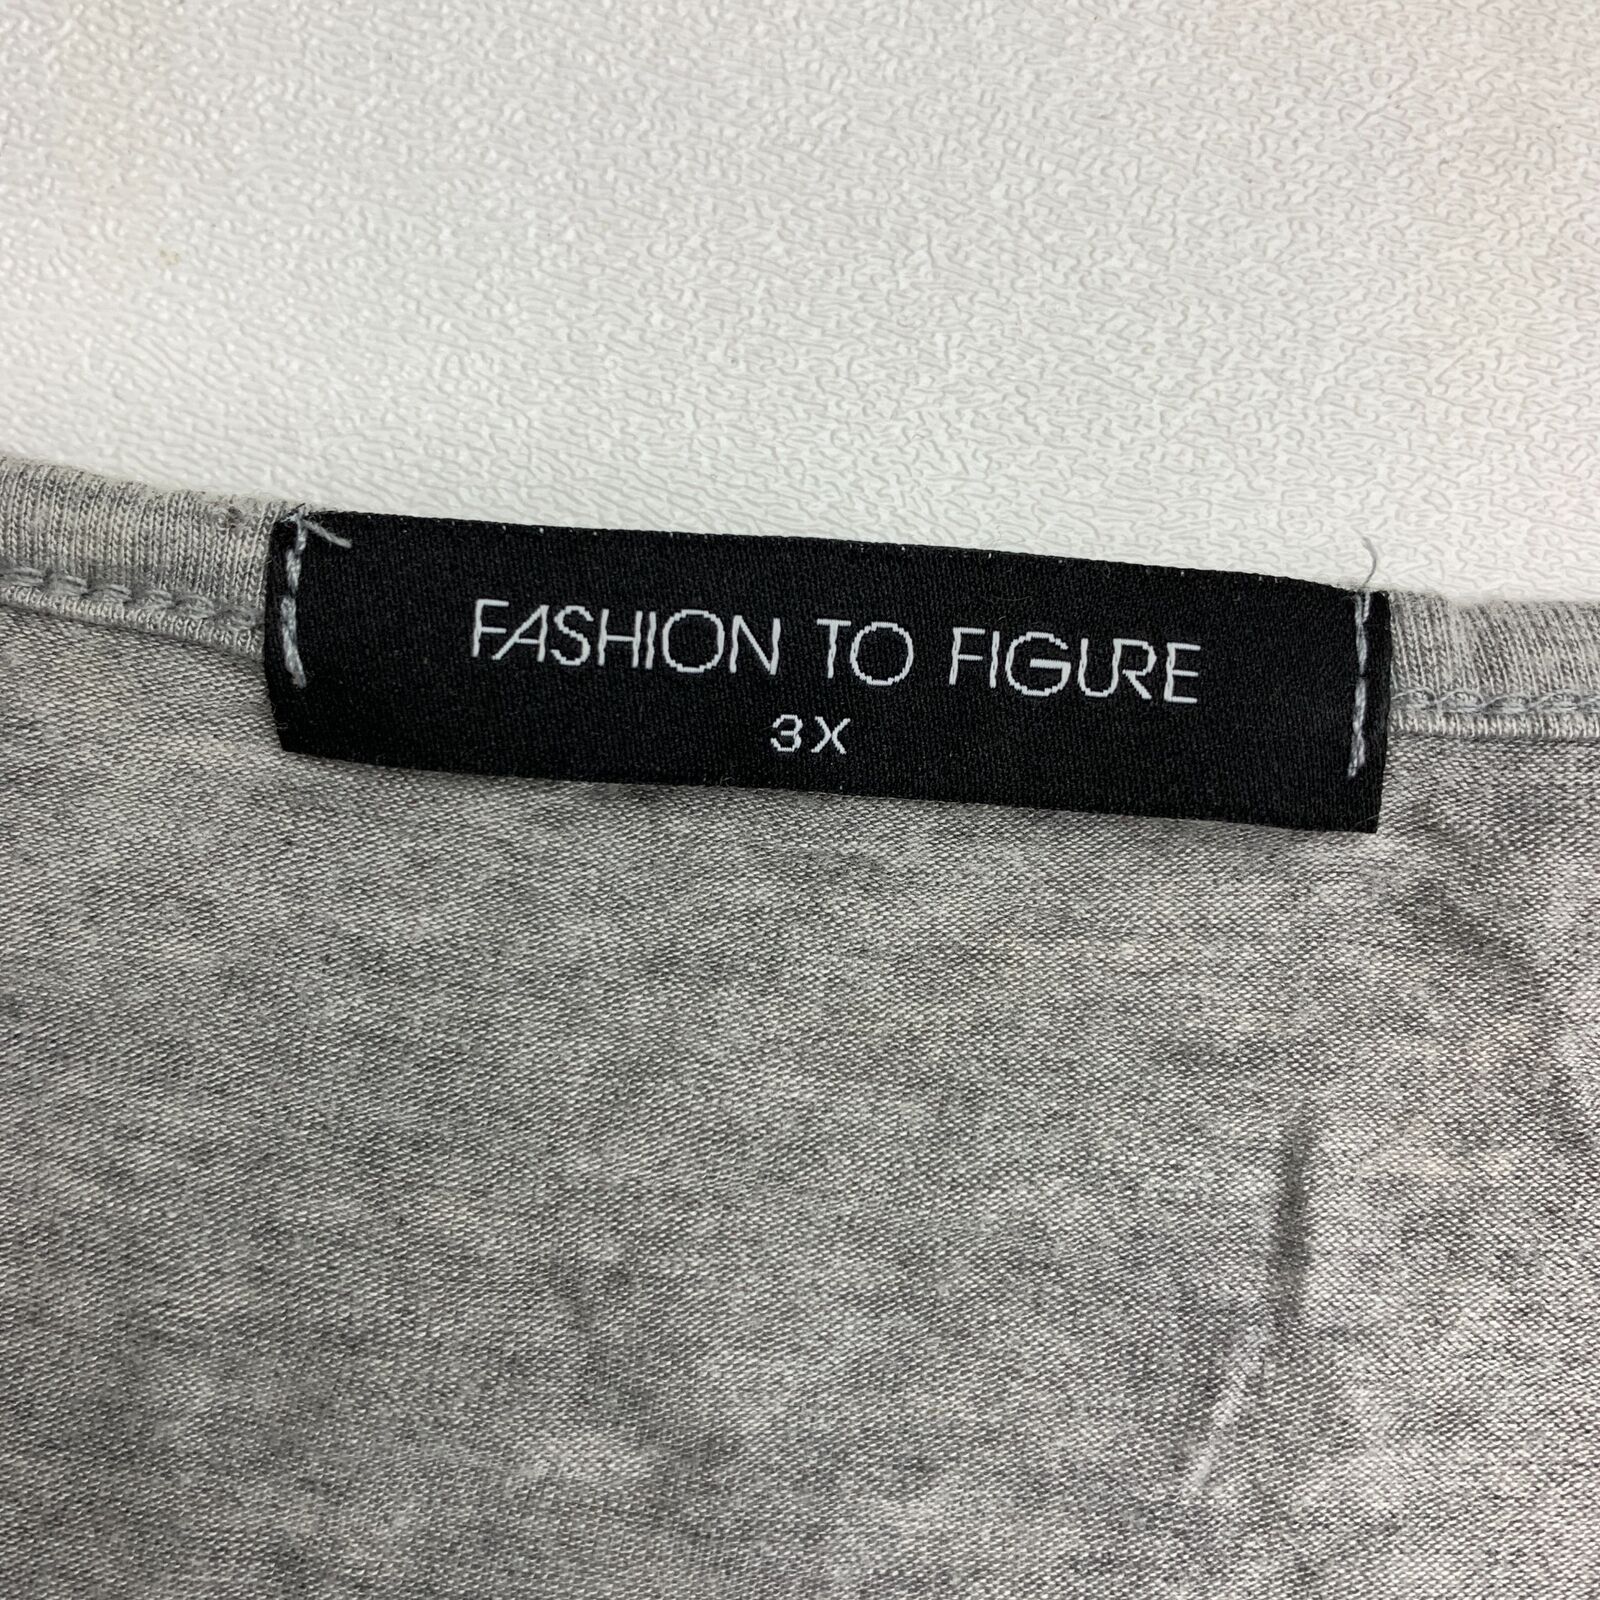 Fashion To Figure Tunic Tee T-Shirt Women's 3X Bl… - image 5